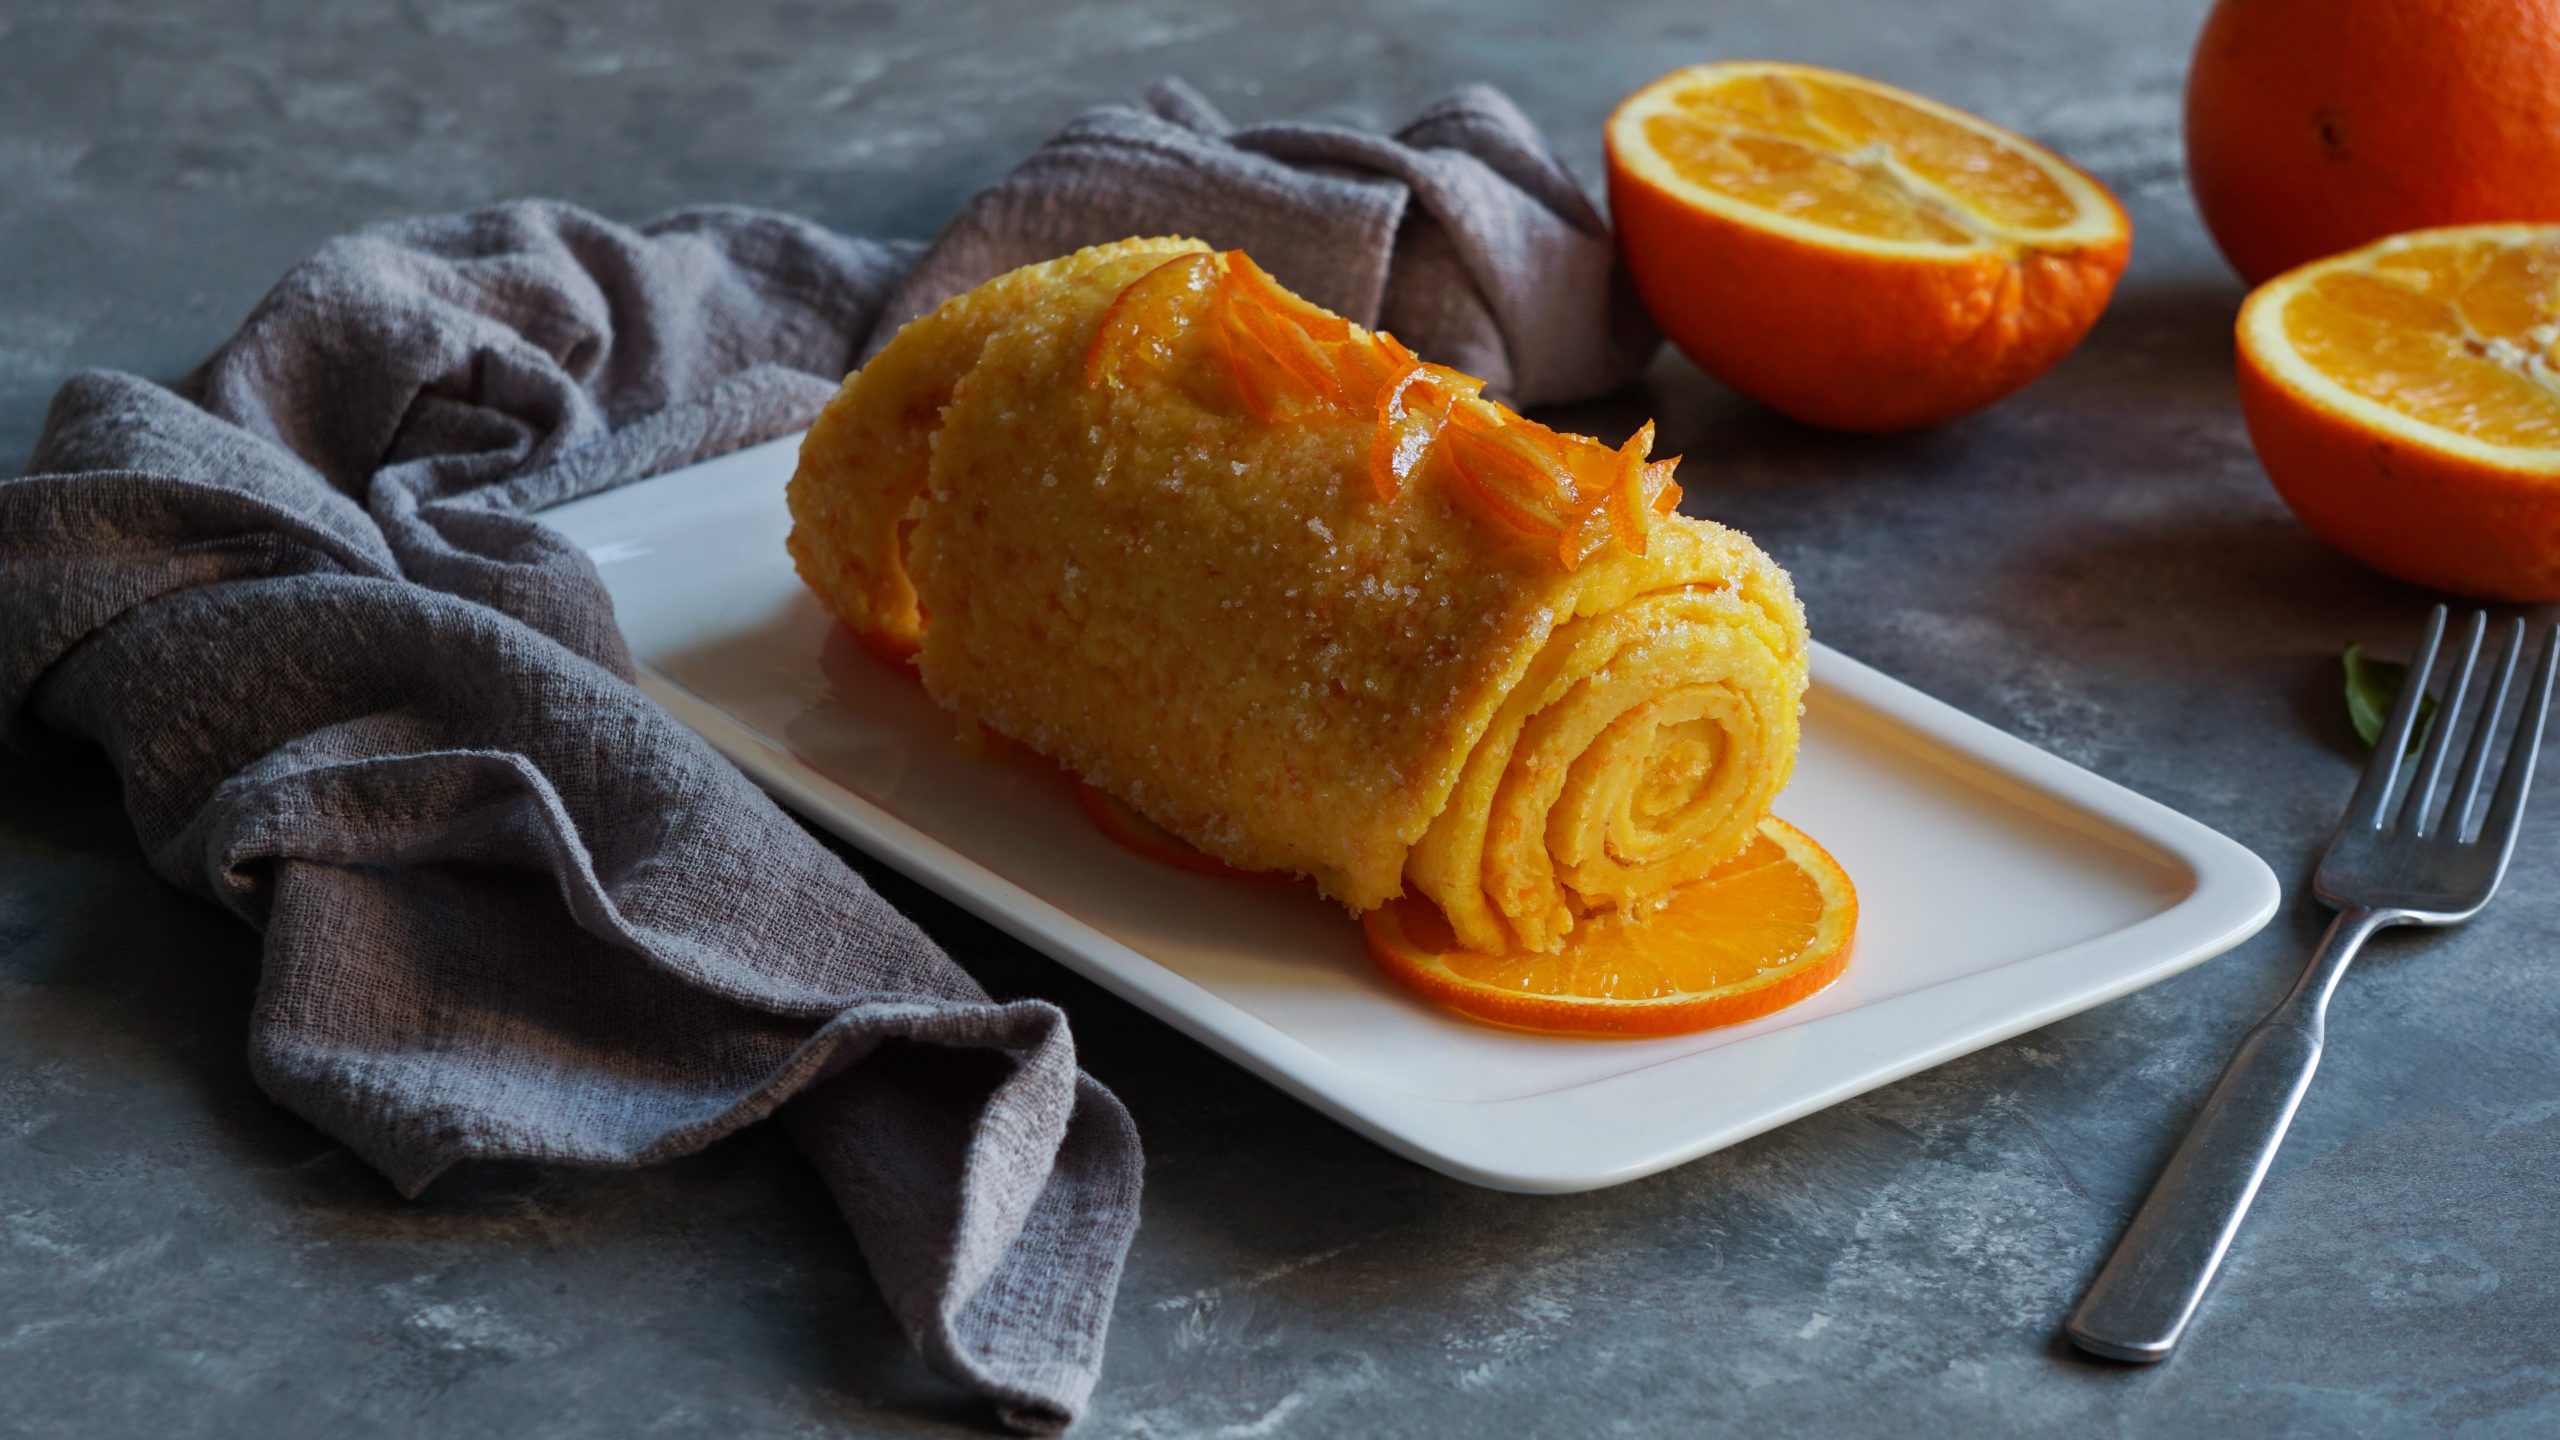 Portuguese Orange Roll Recipe